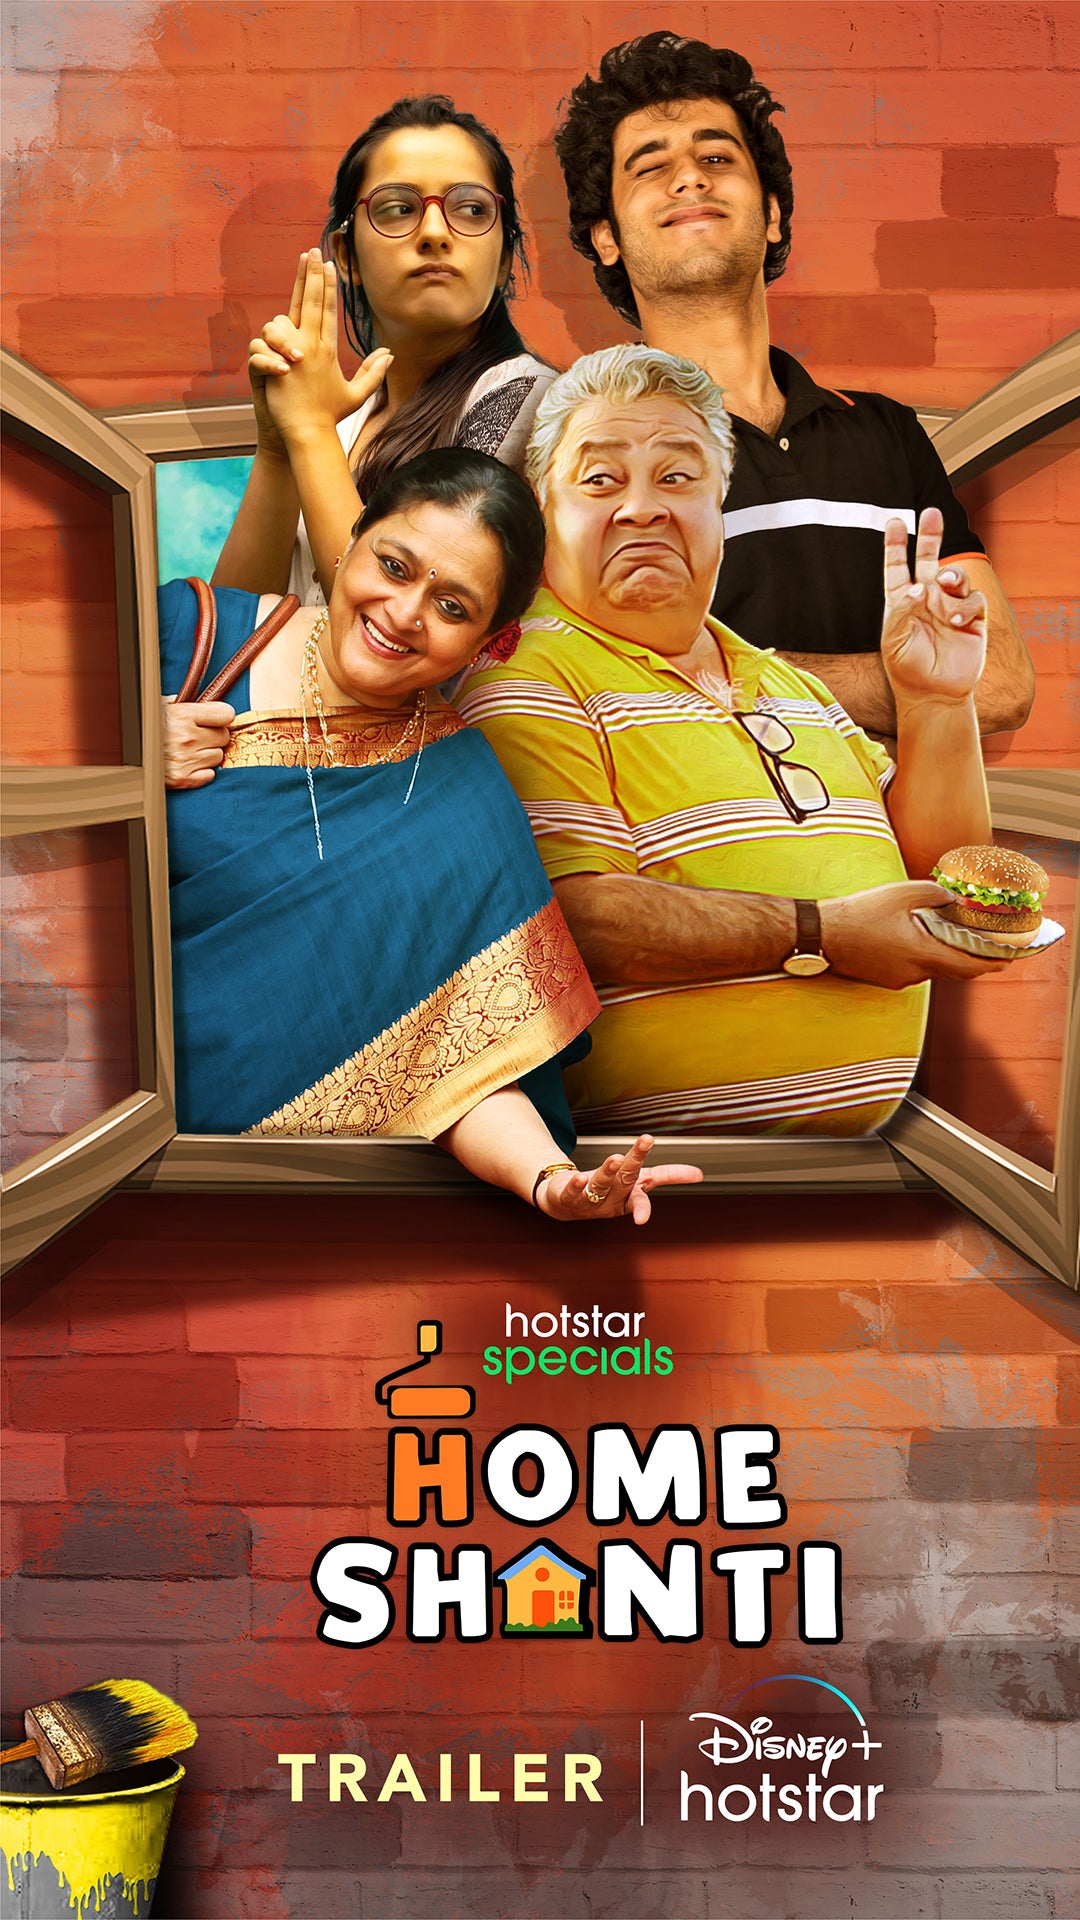 TV ratings for Home Shanti in India. Disney+ TV series